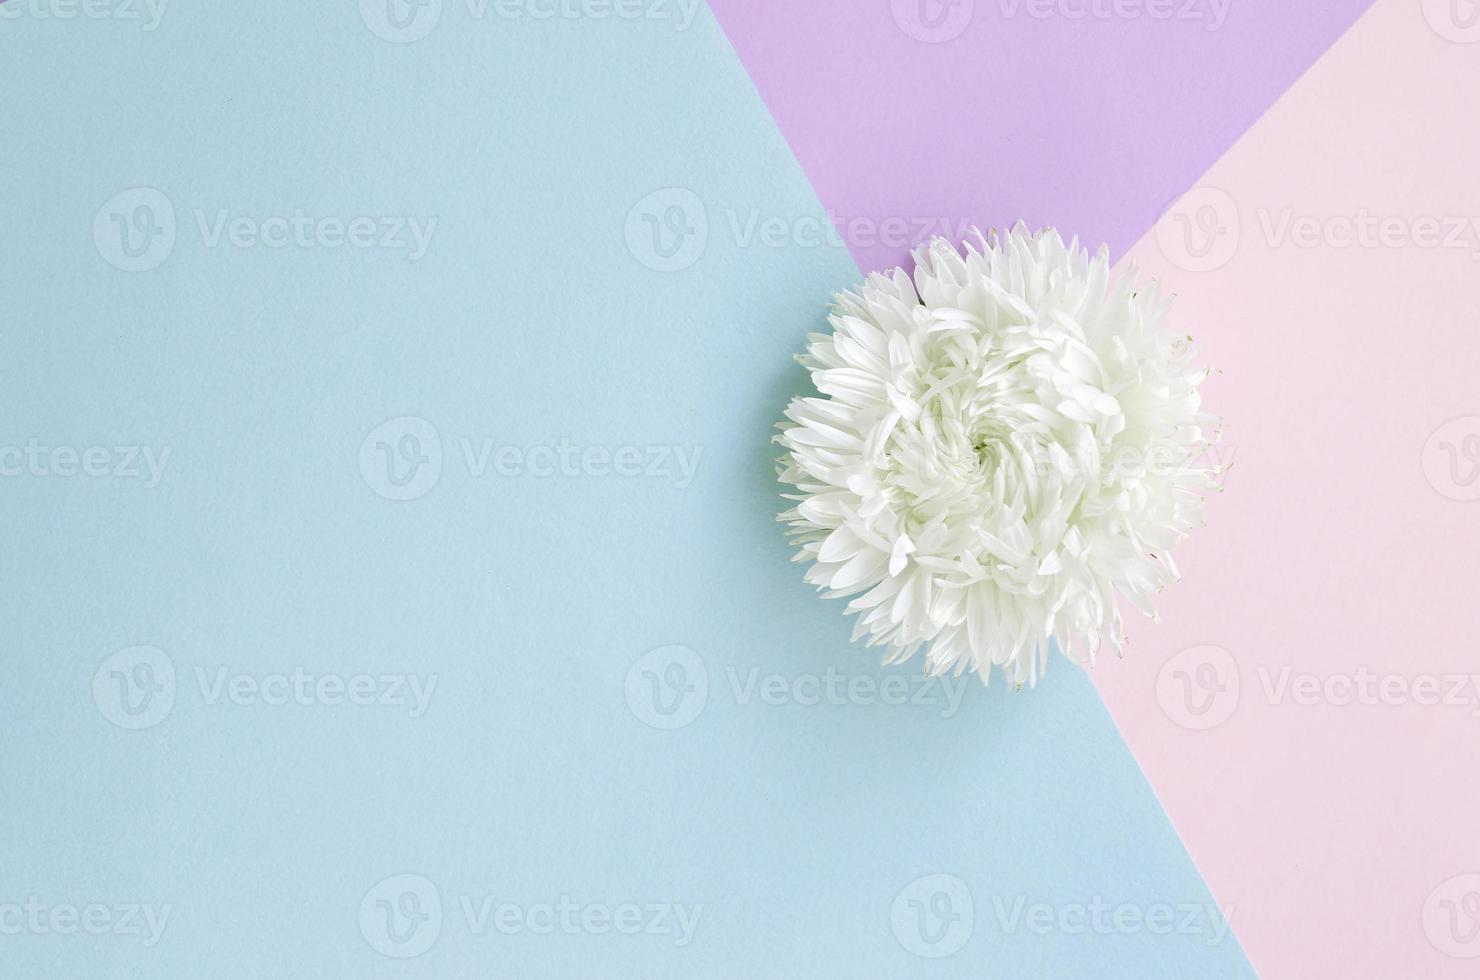 flor de crisantemo blanco sobre fondo azul pastel rosa y lila vista superior foto